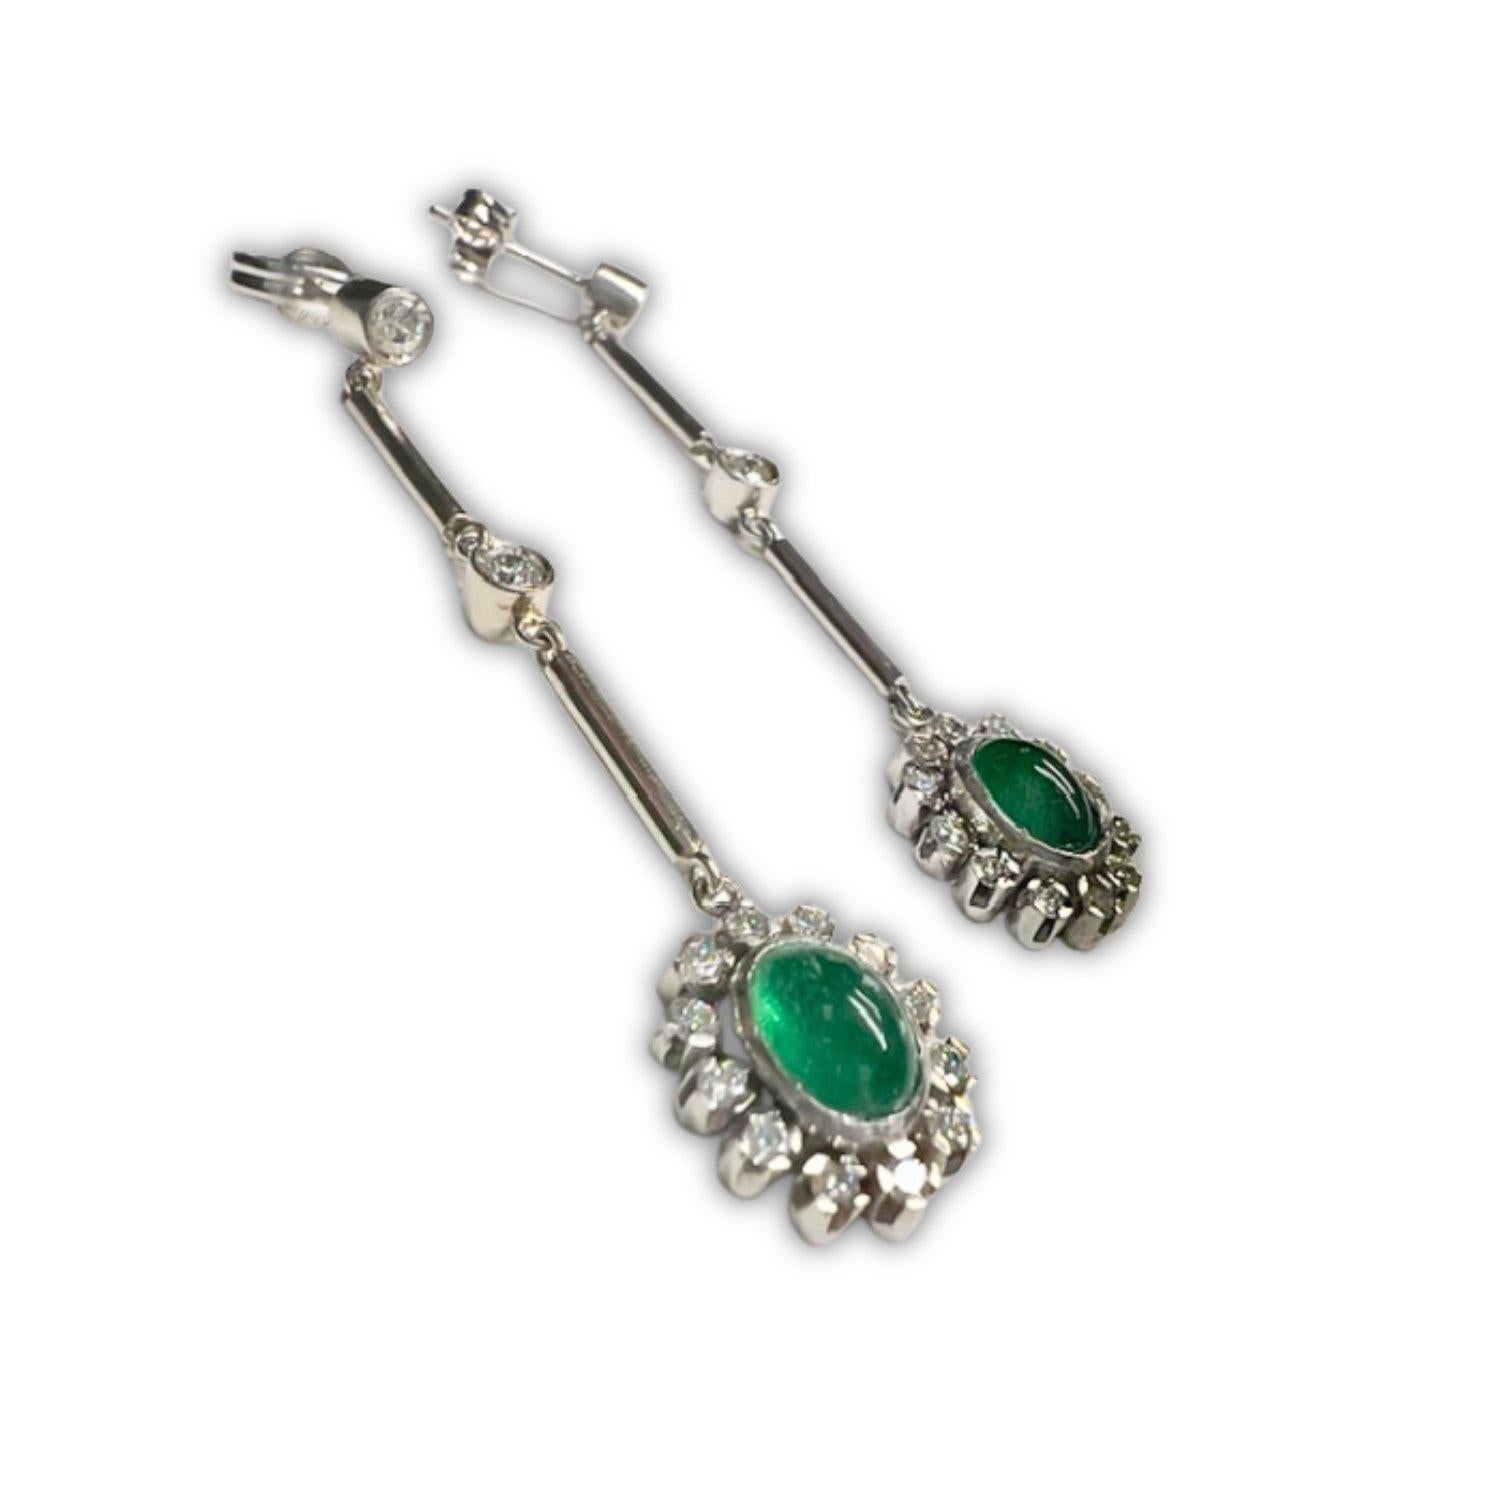 Entdecken Sie die exquisite Schönheit des Art déco mit diesen Ohrringen aus Platin, 950 Karat, die mit Diamanten und einem kolumbianischen Smaragd verziert sind. Mit einem Gewicht von 7,52 Gramm und einer Länge von 4,8 cm und einer Breite von 1 cm